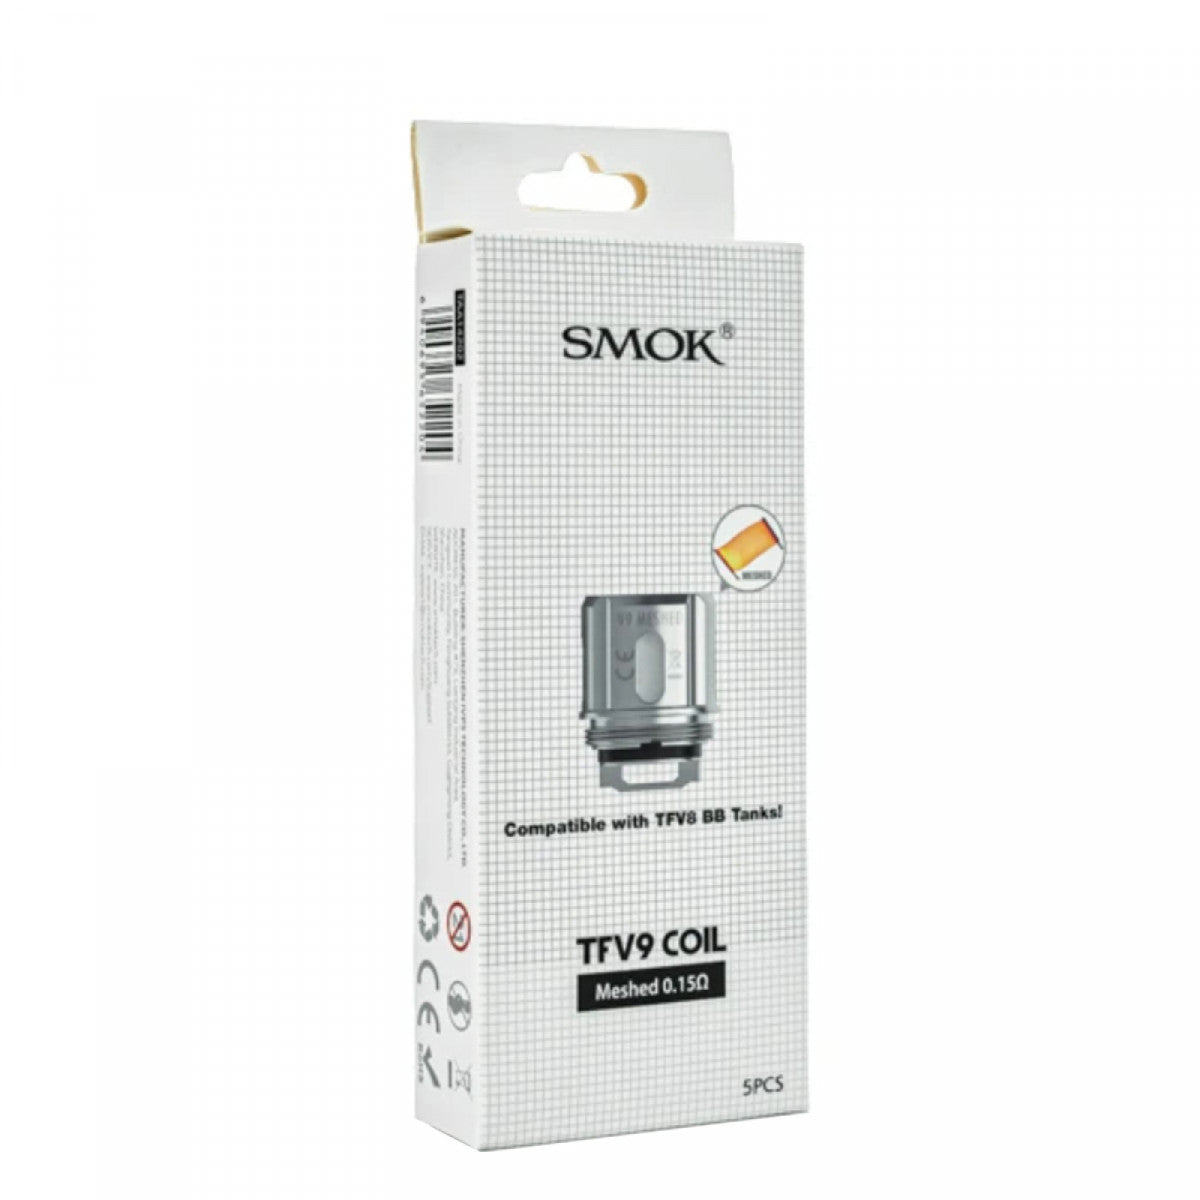 SMOK TFV9 Coil